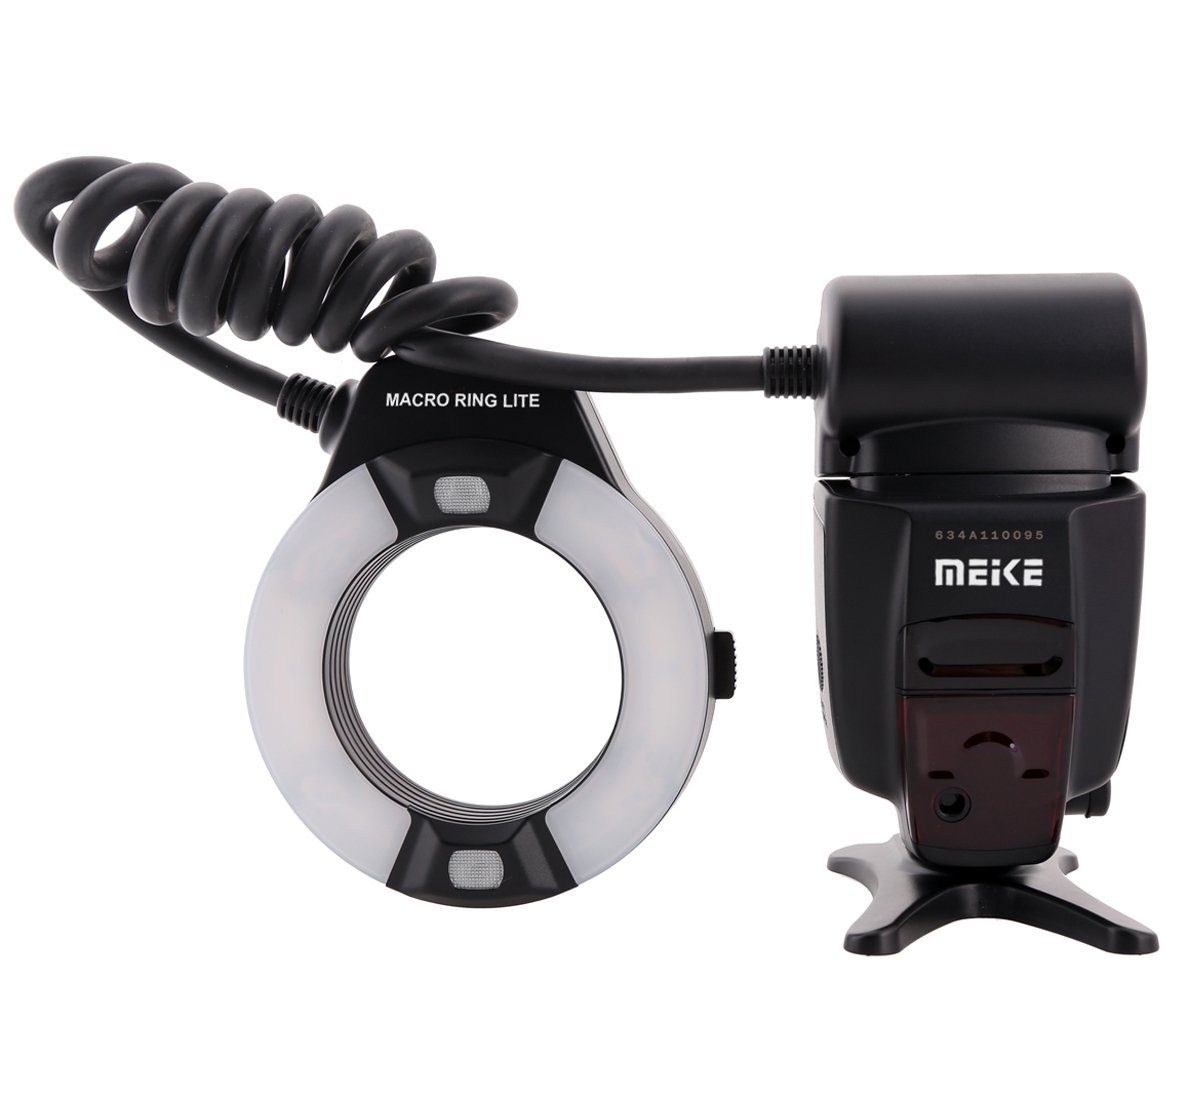 Meike Meike MK-14EXT Makro TTL mit LED für Canon Blitzgerät Ringblitz Hilfslicht